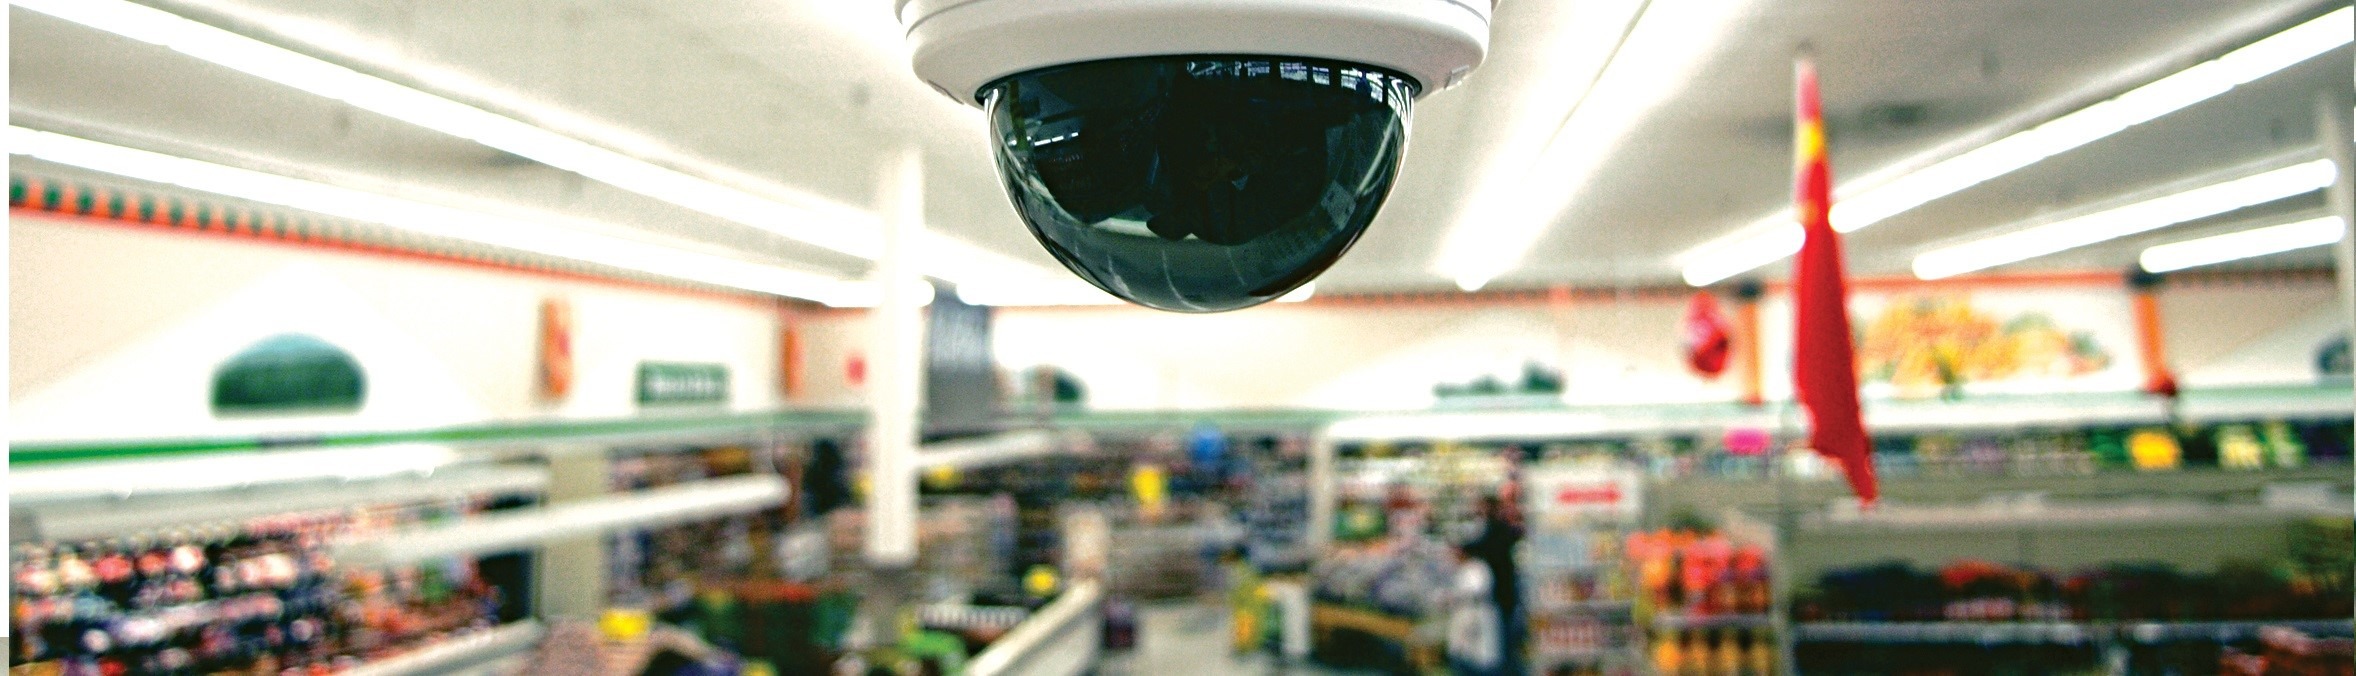 видеонаблюдение в магазине супермаркете торговом центре